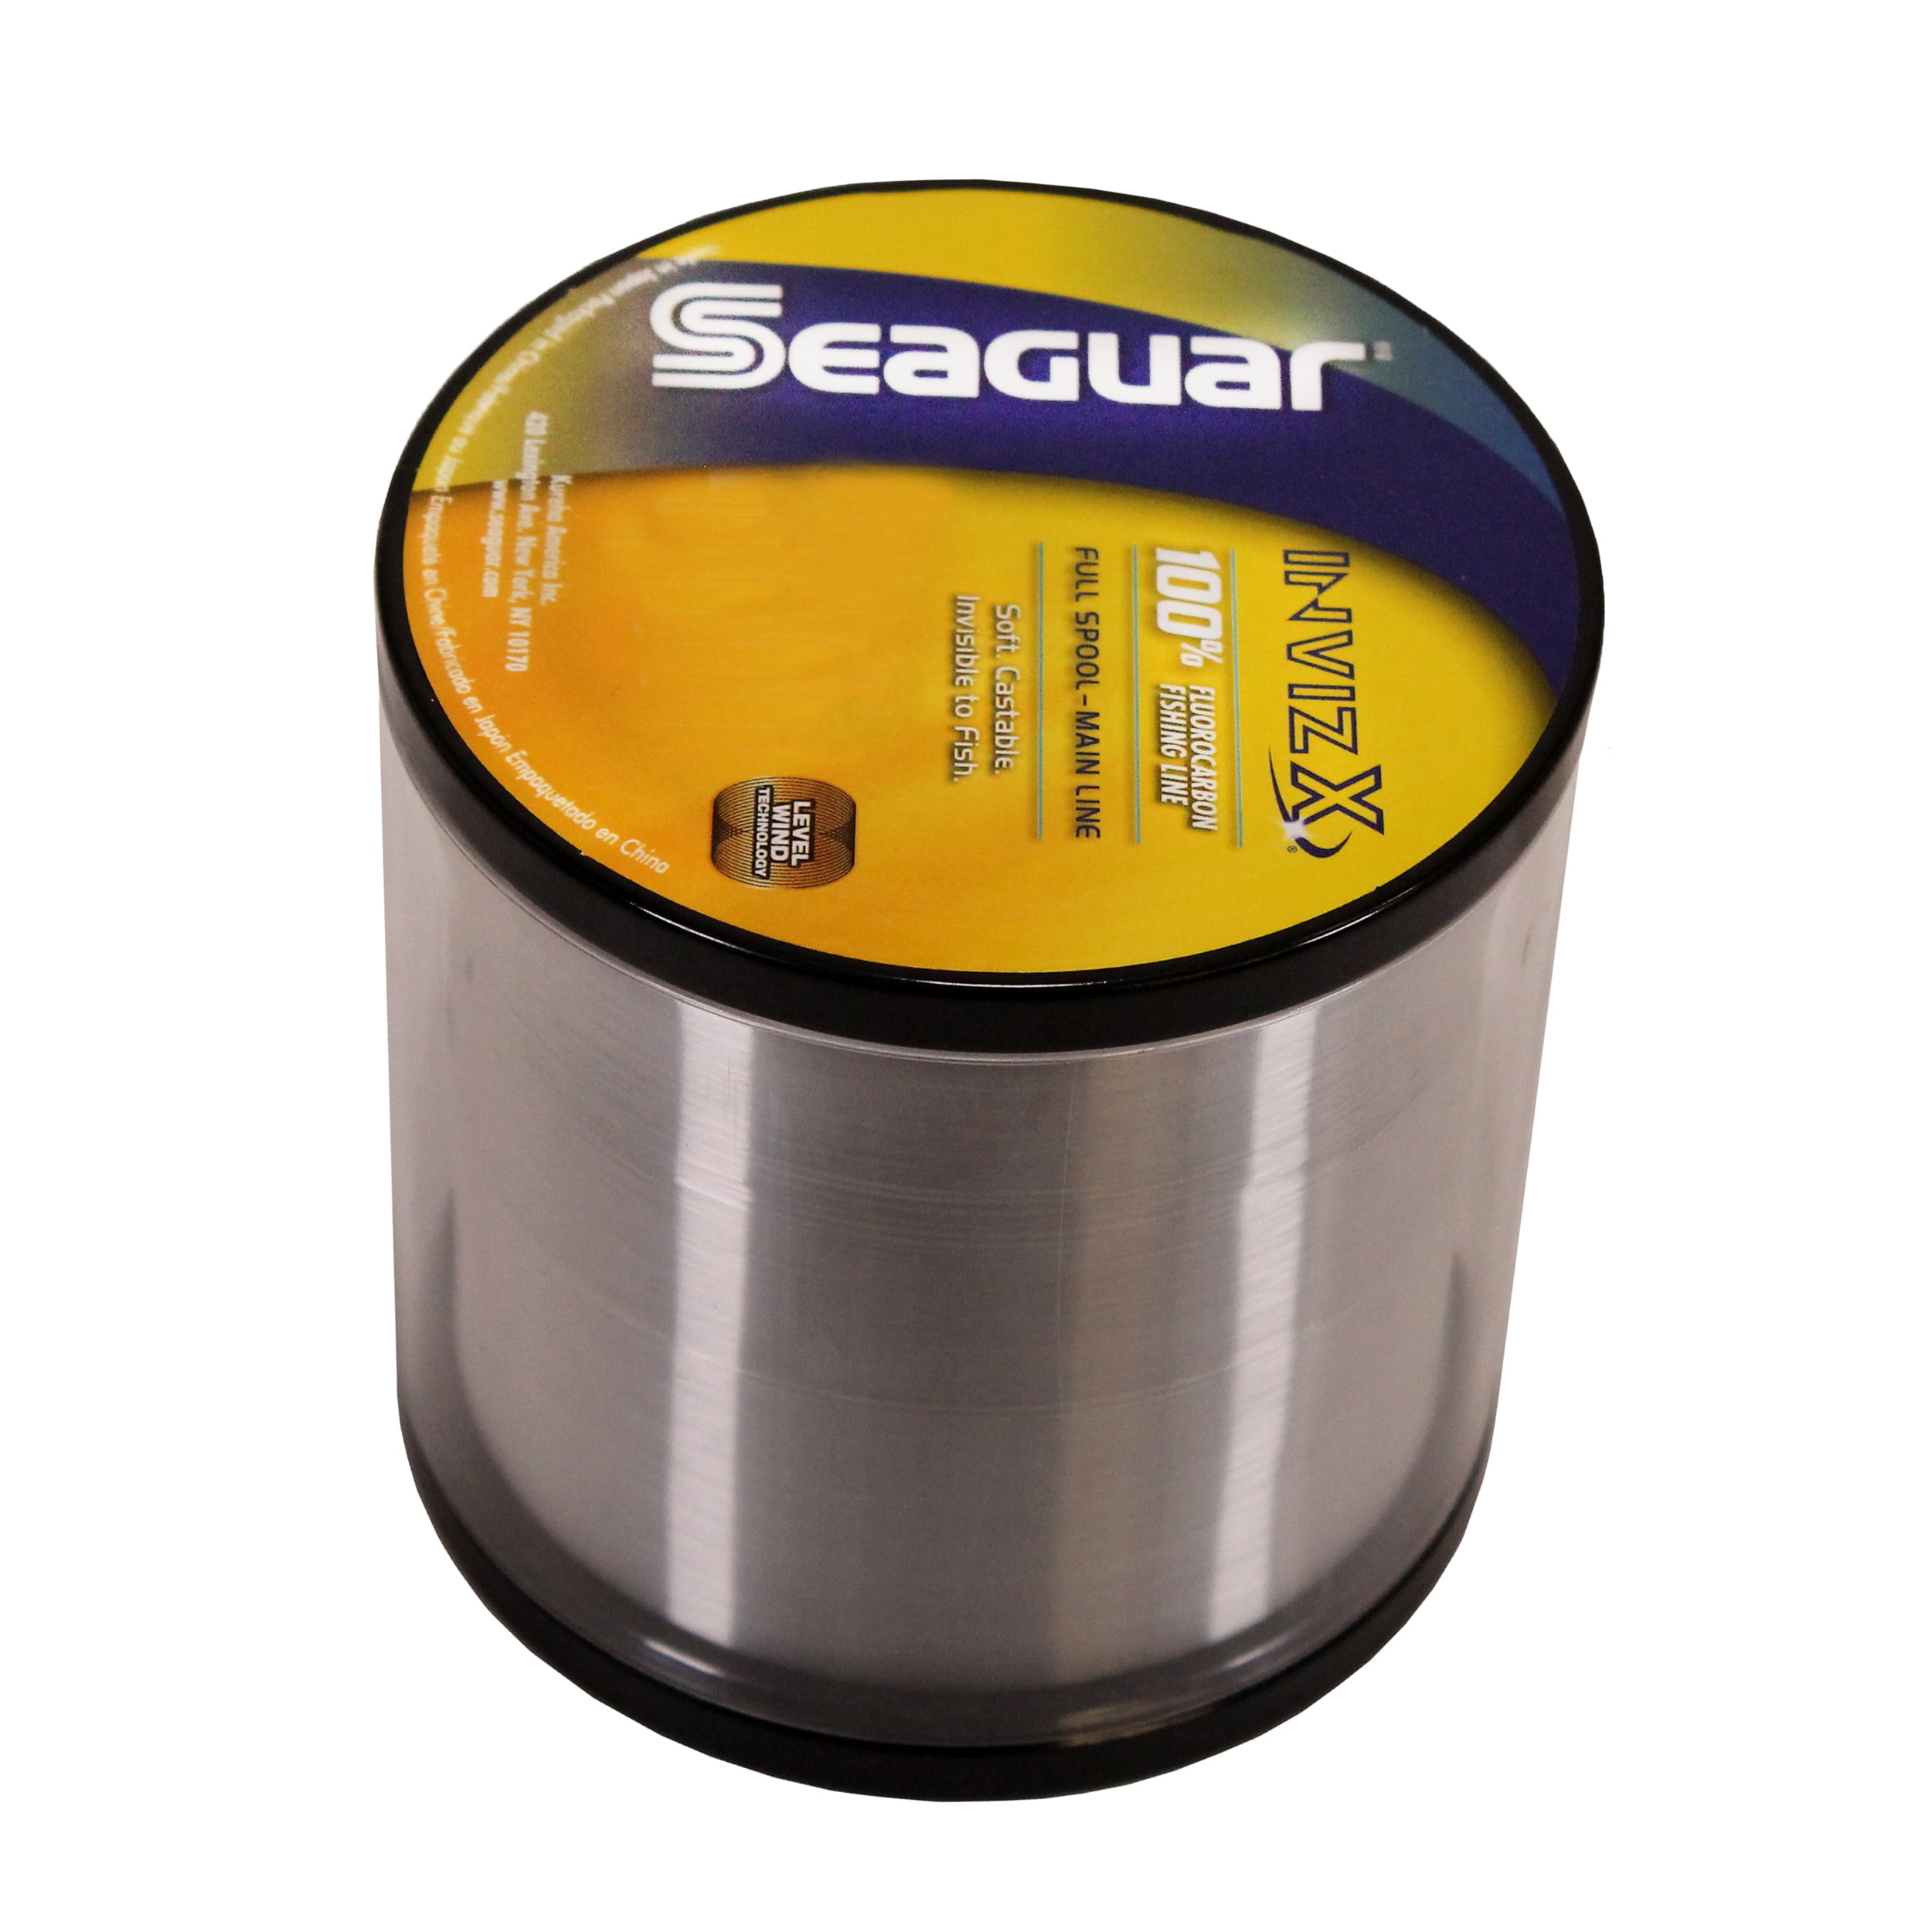 Seaguar Invizx 100% Fluorocarbon Fishing Line 4lbs, 1000yds Break